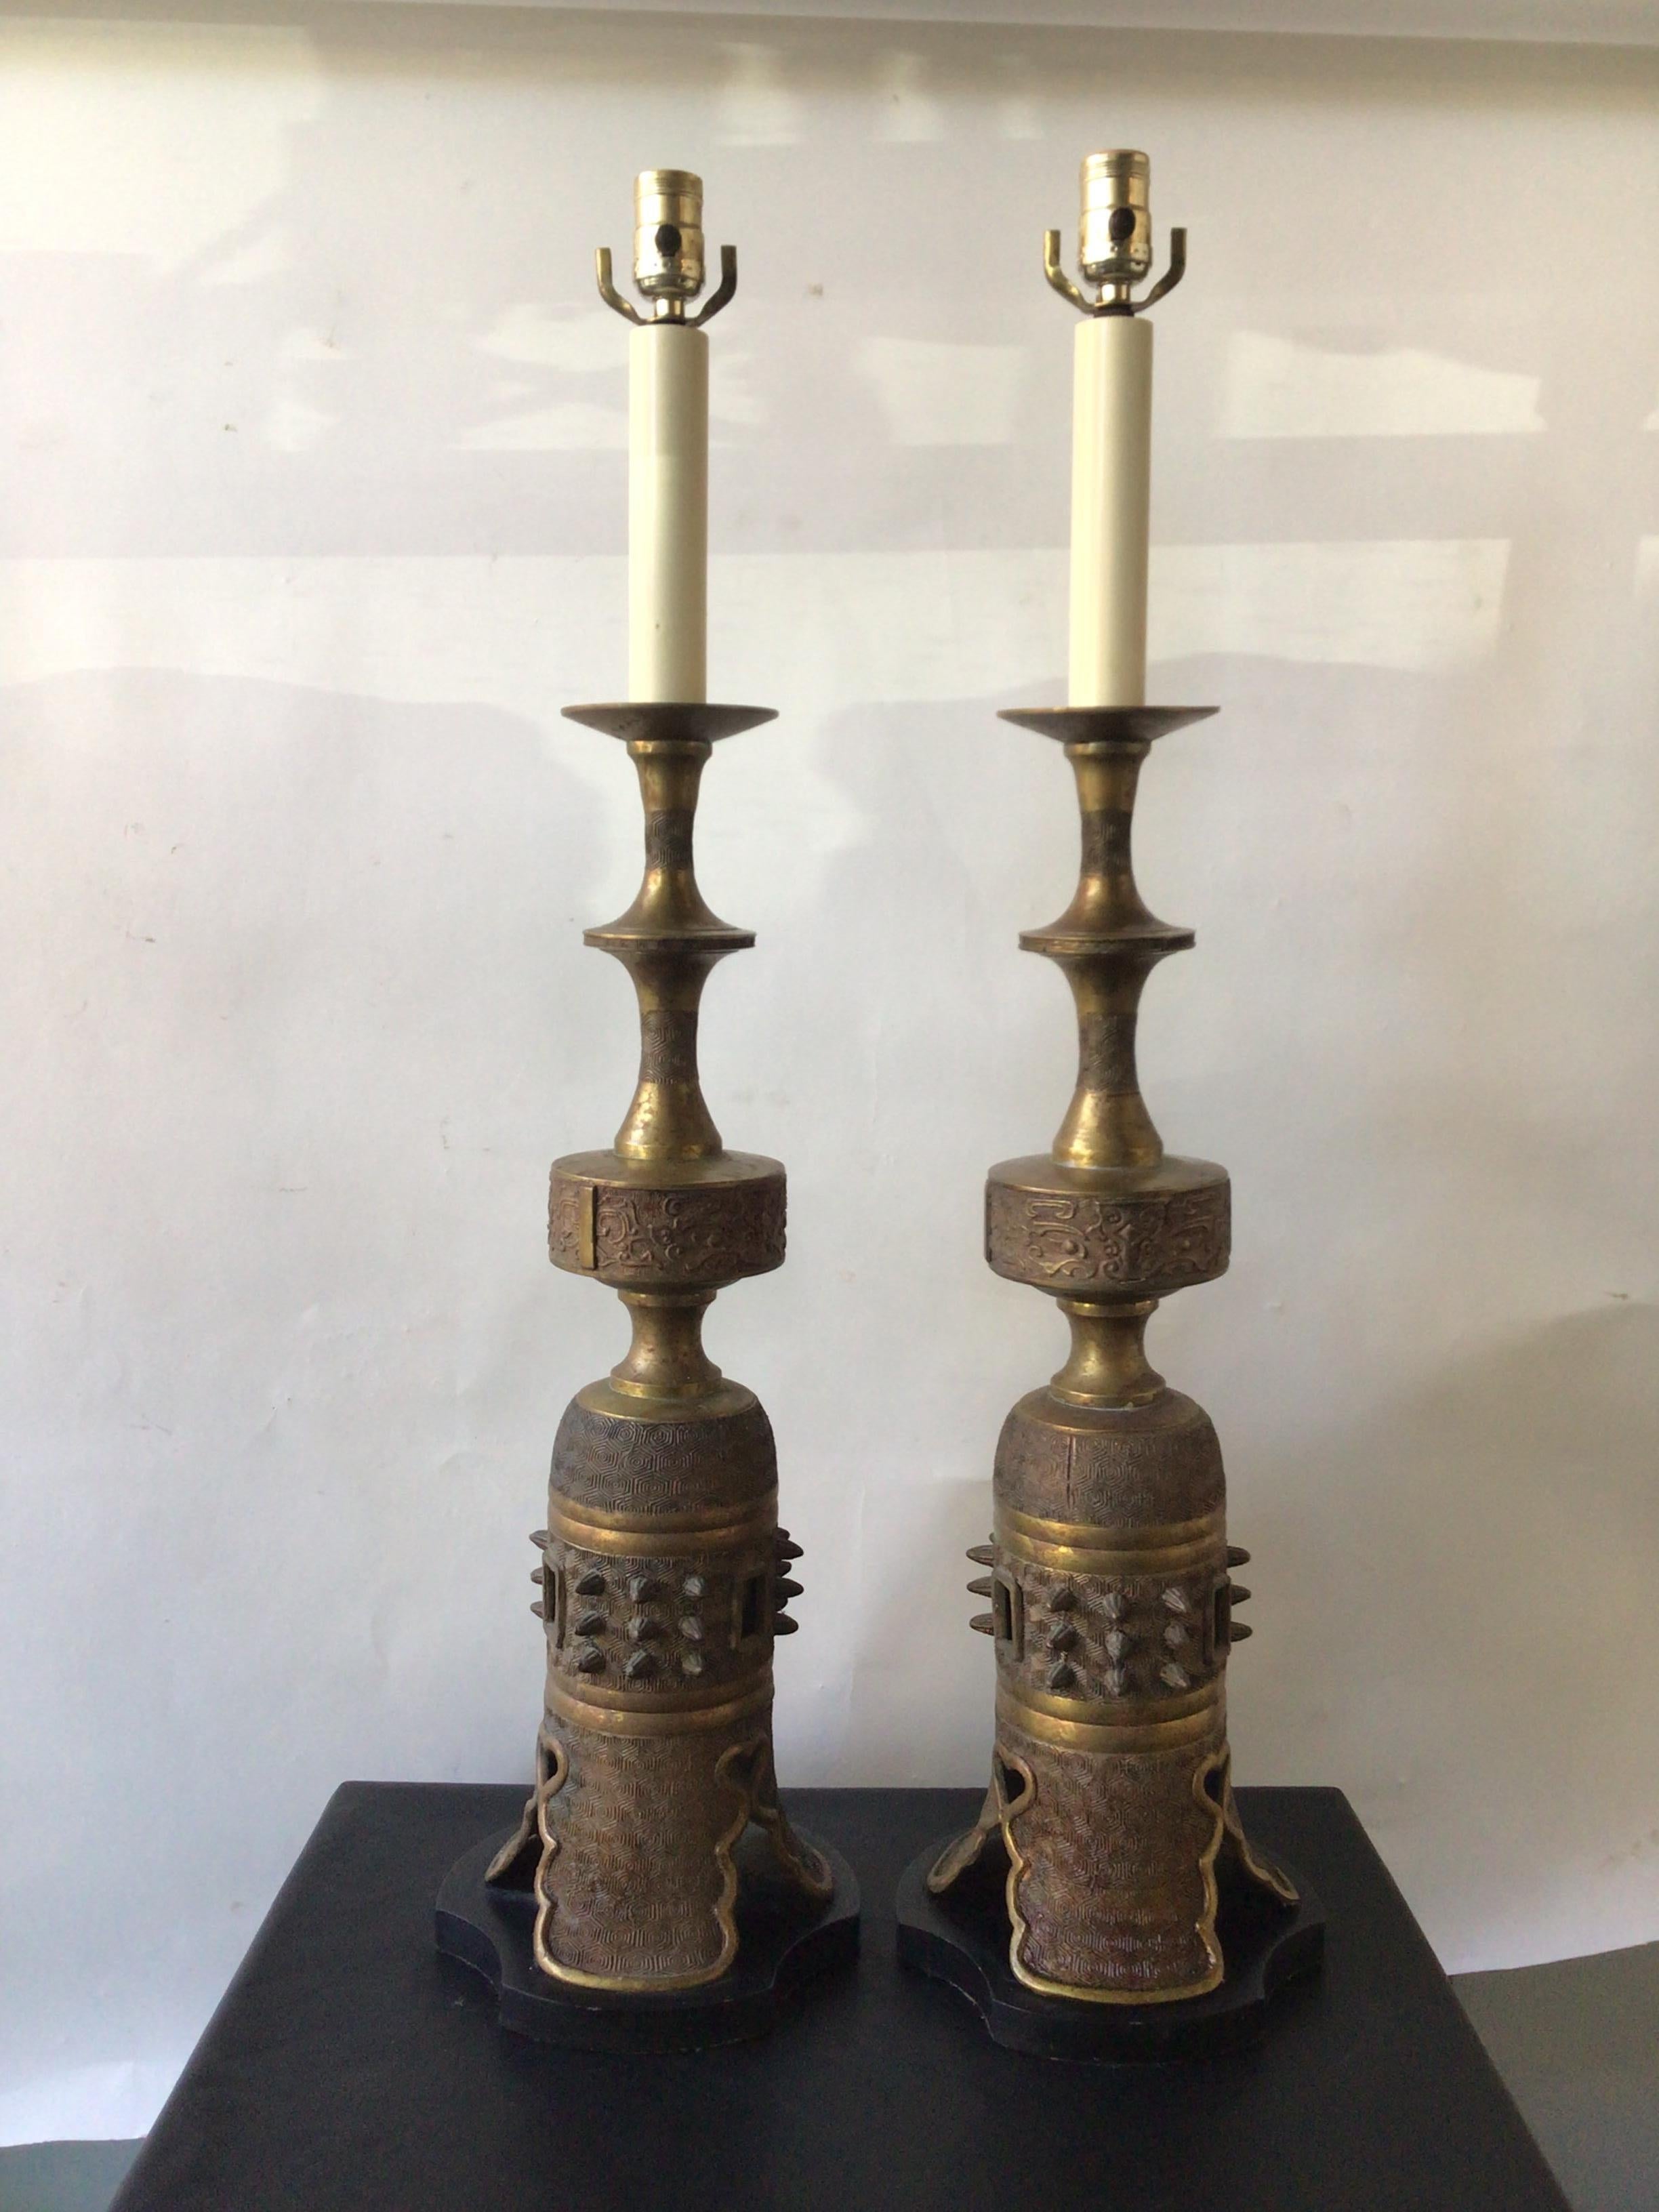 Paire de lampes asiatiques en bronze de style James Mount des années 1950, sur des bases en métal.